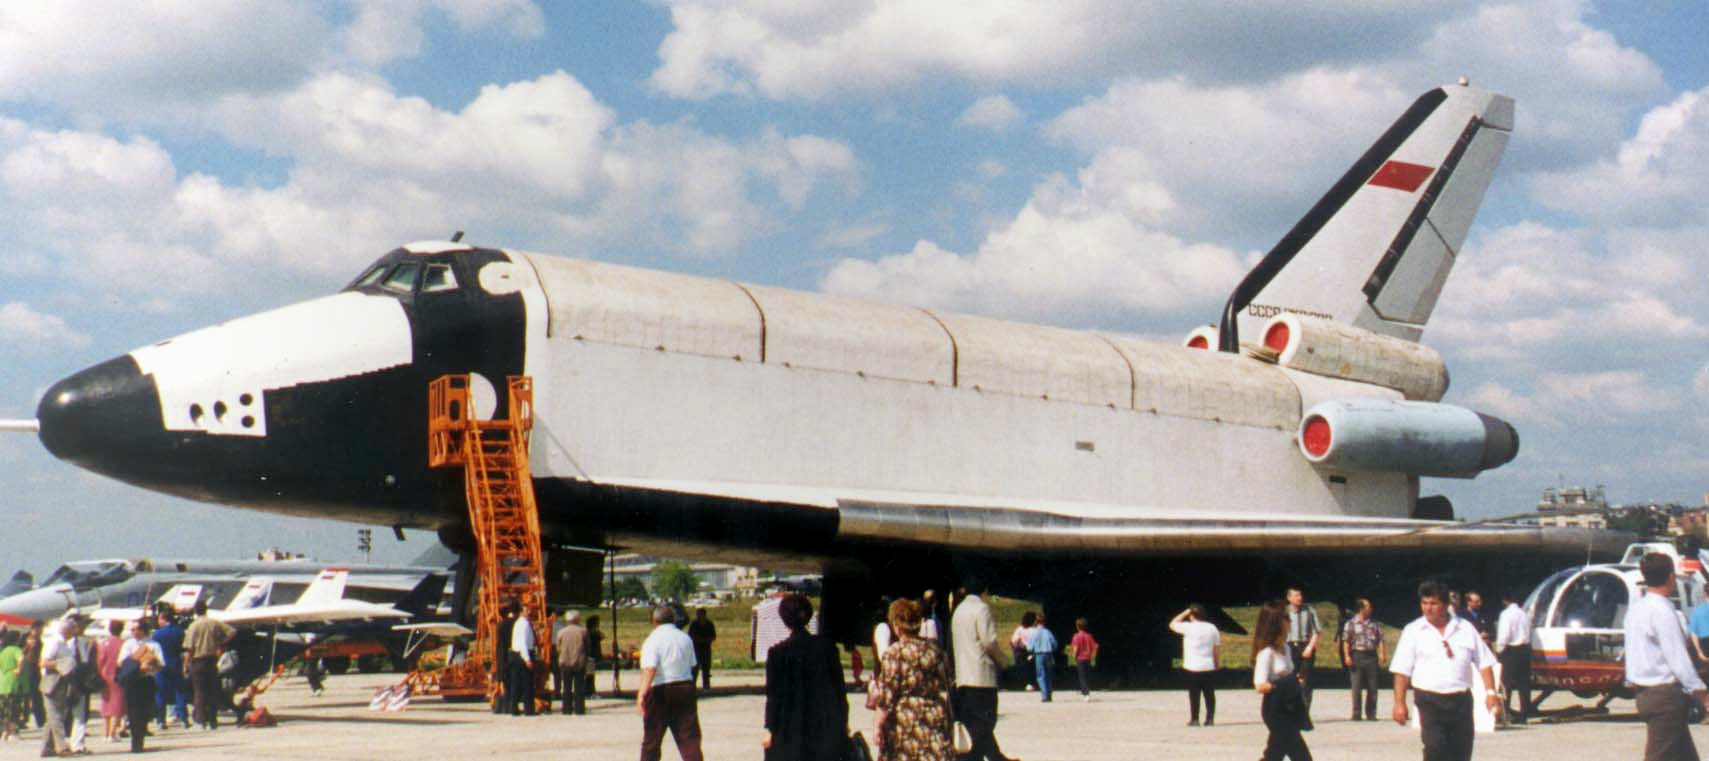 Третий экземпляр космического корабля "Буран" на аэродроме в Жуковском. Фото © Wikipedia